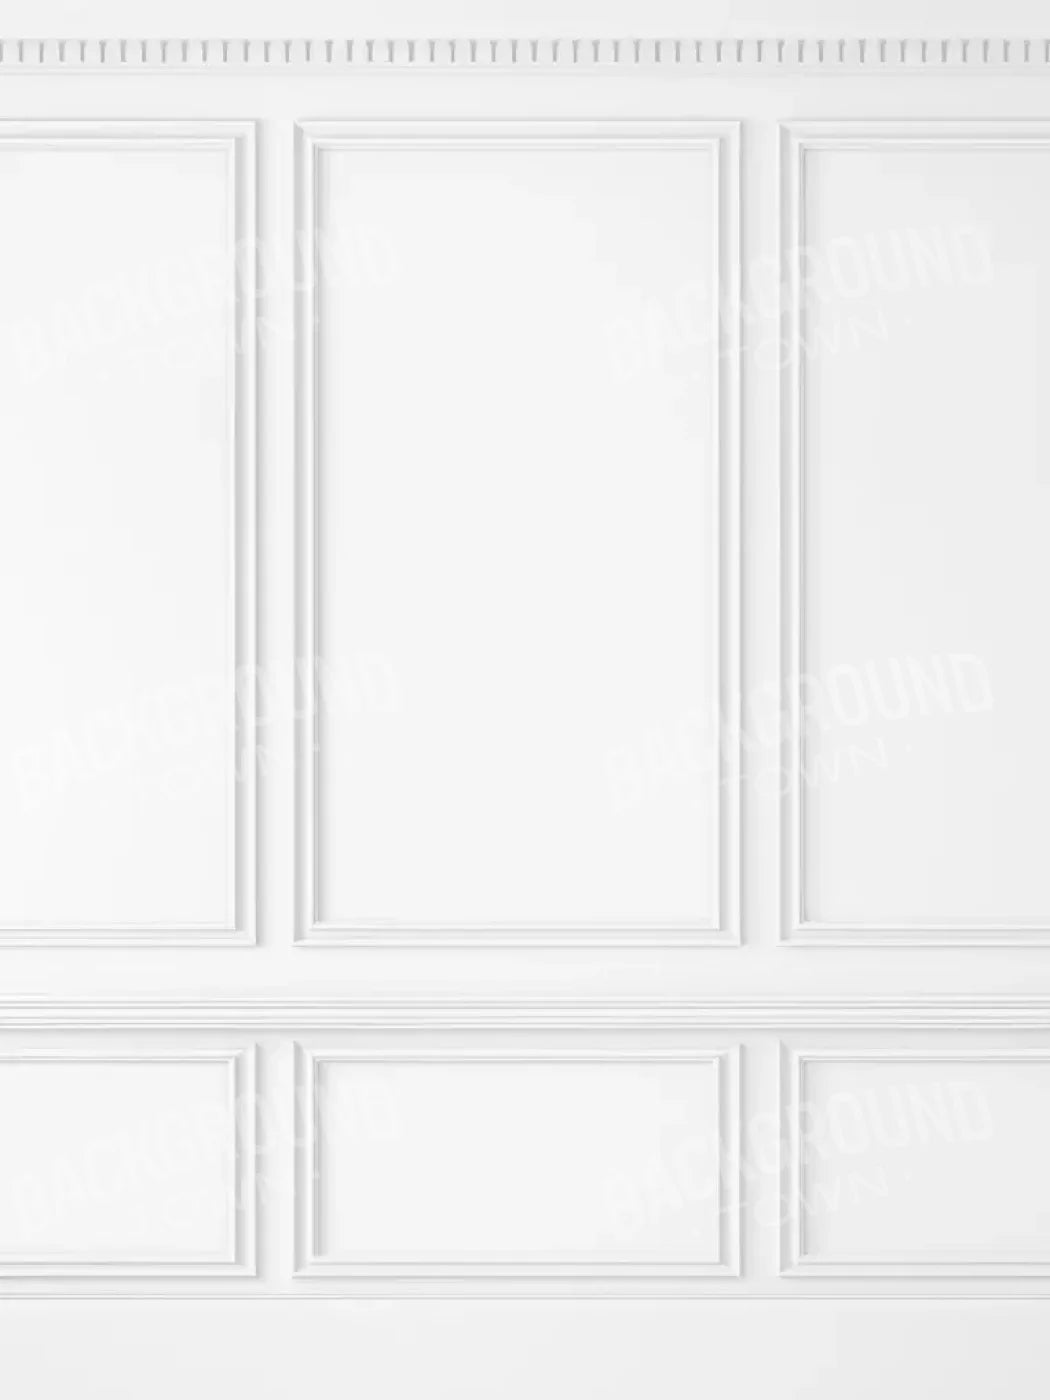 White Wall Ballroom 5’X6’8 Fleece (60 X 80 Inch) Backdrop